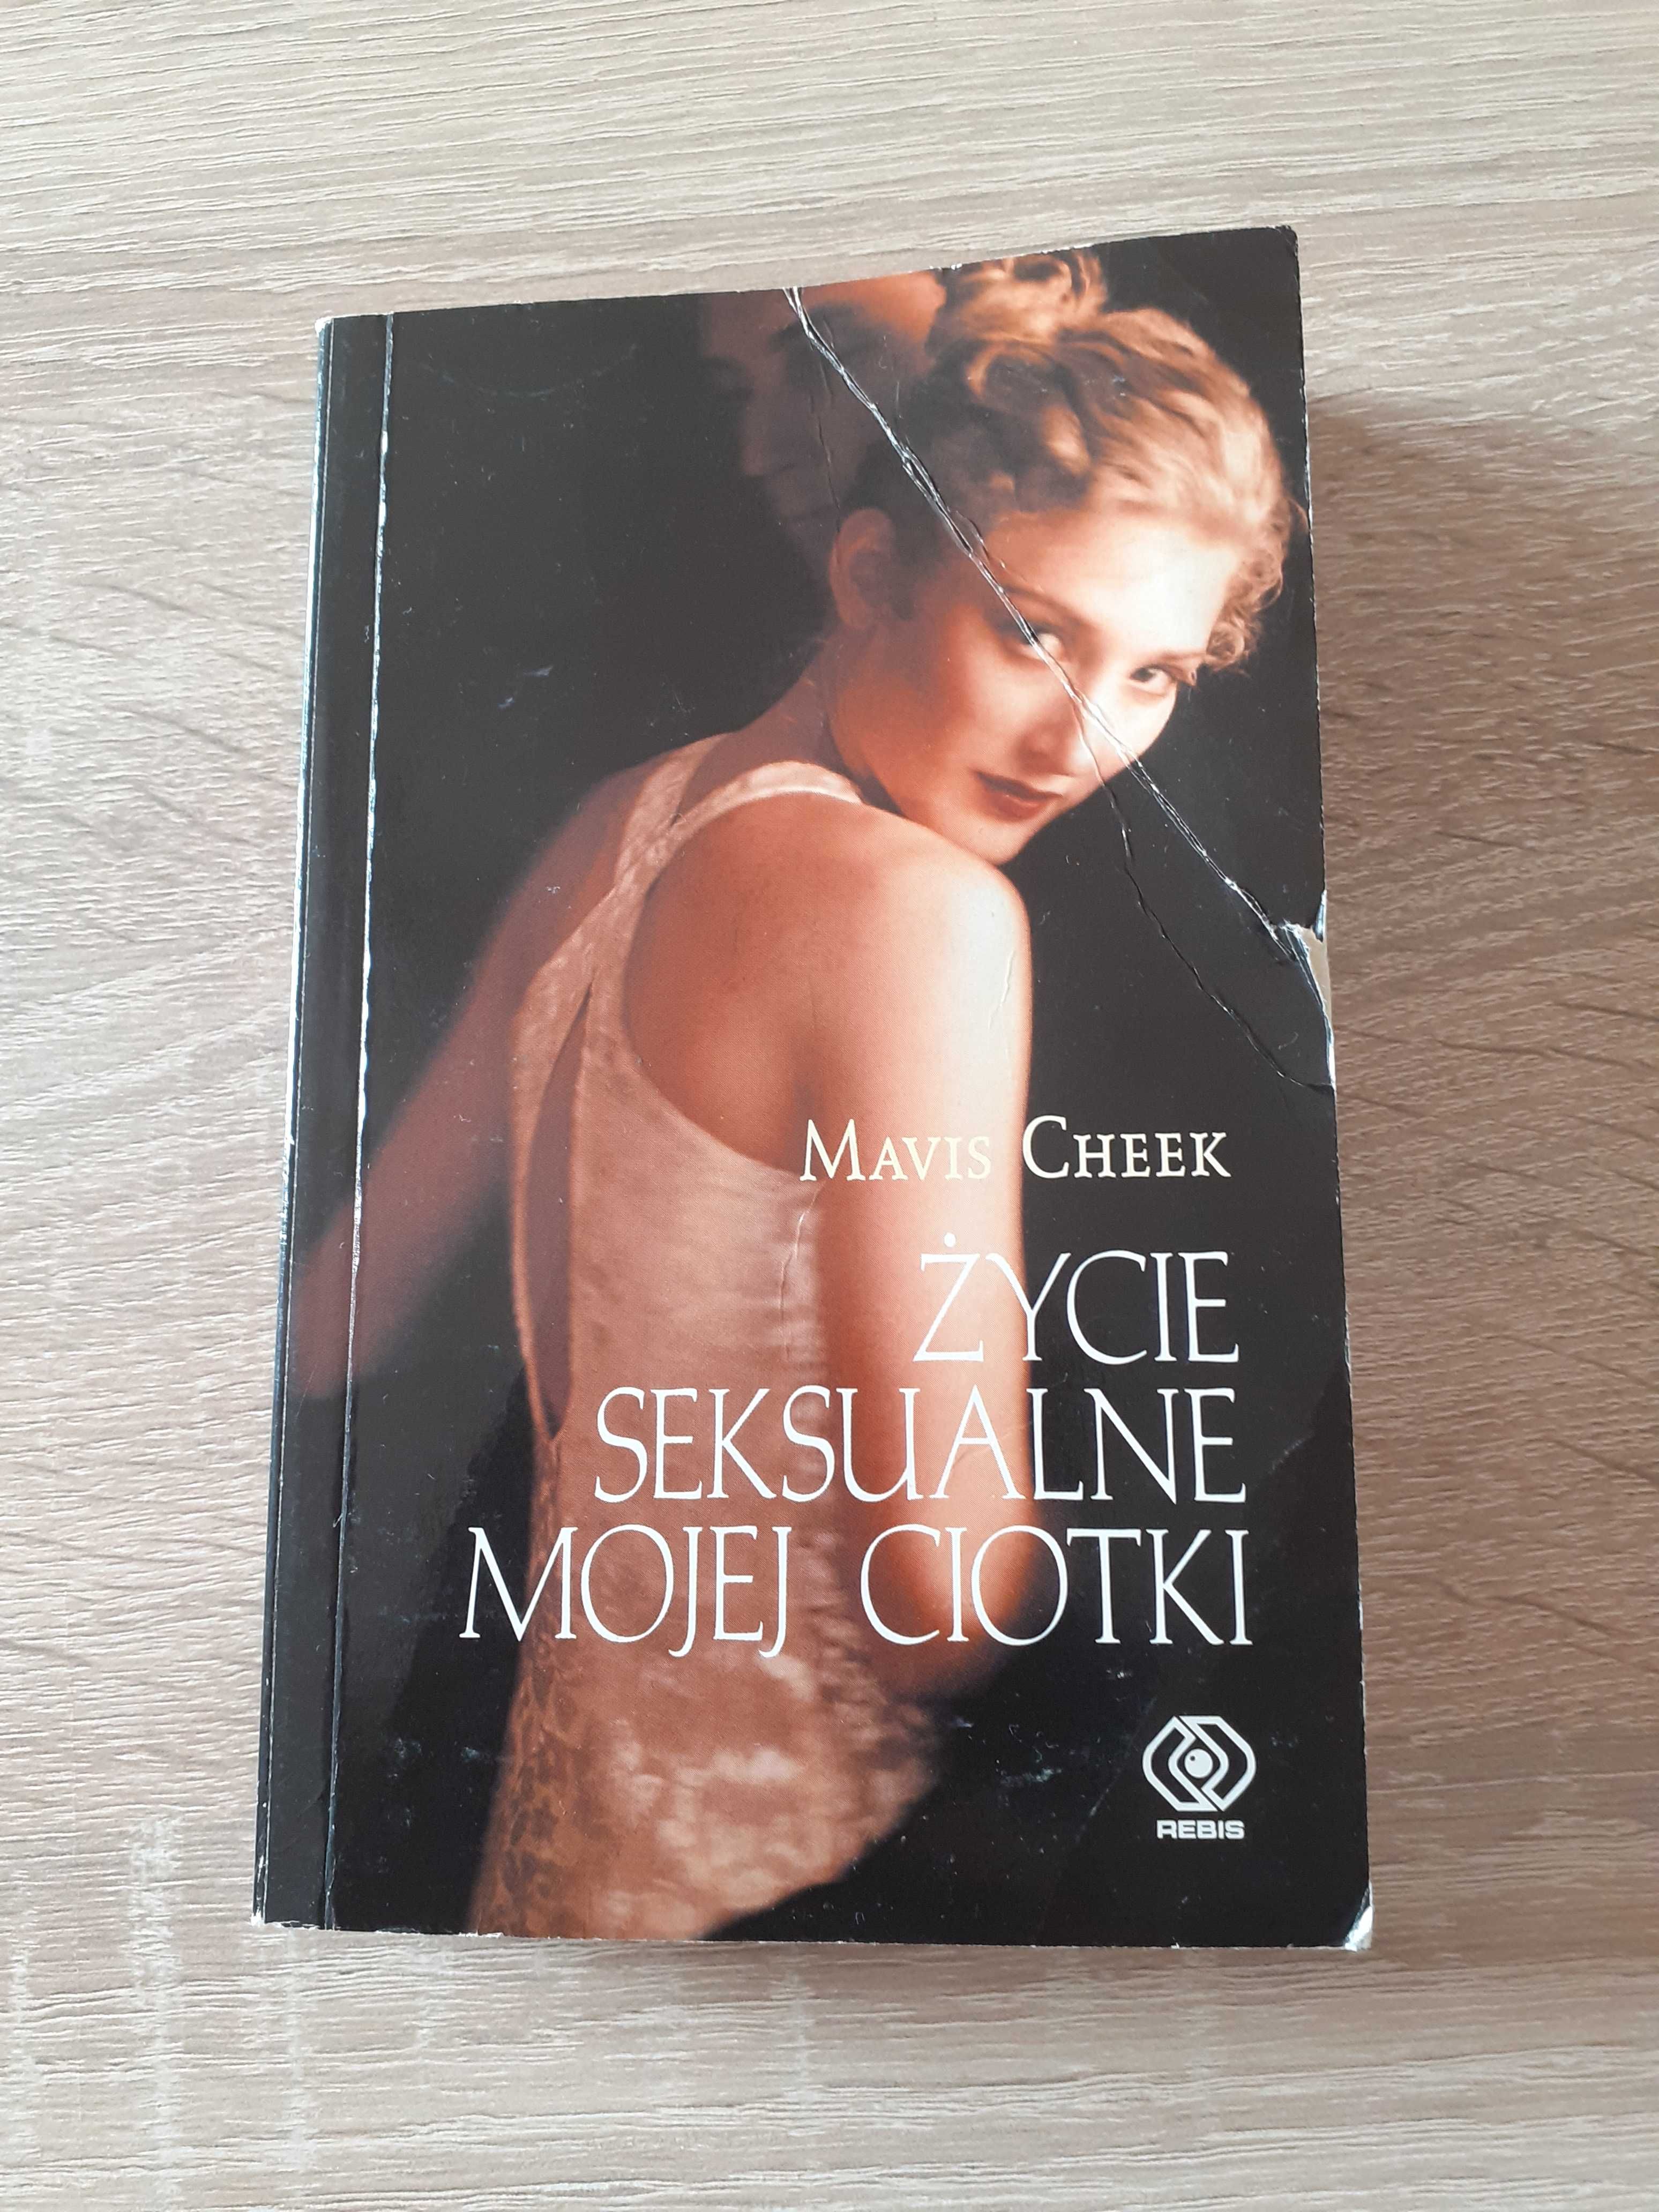 Książka Życie seksualne mojej ciotki autorstwa Mavis Cheek